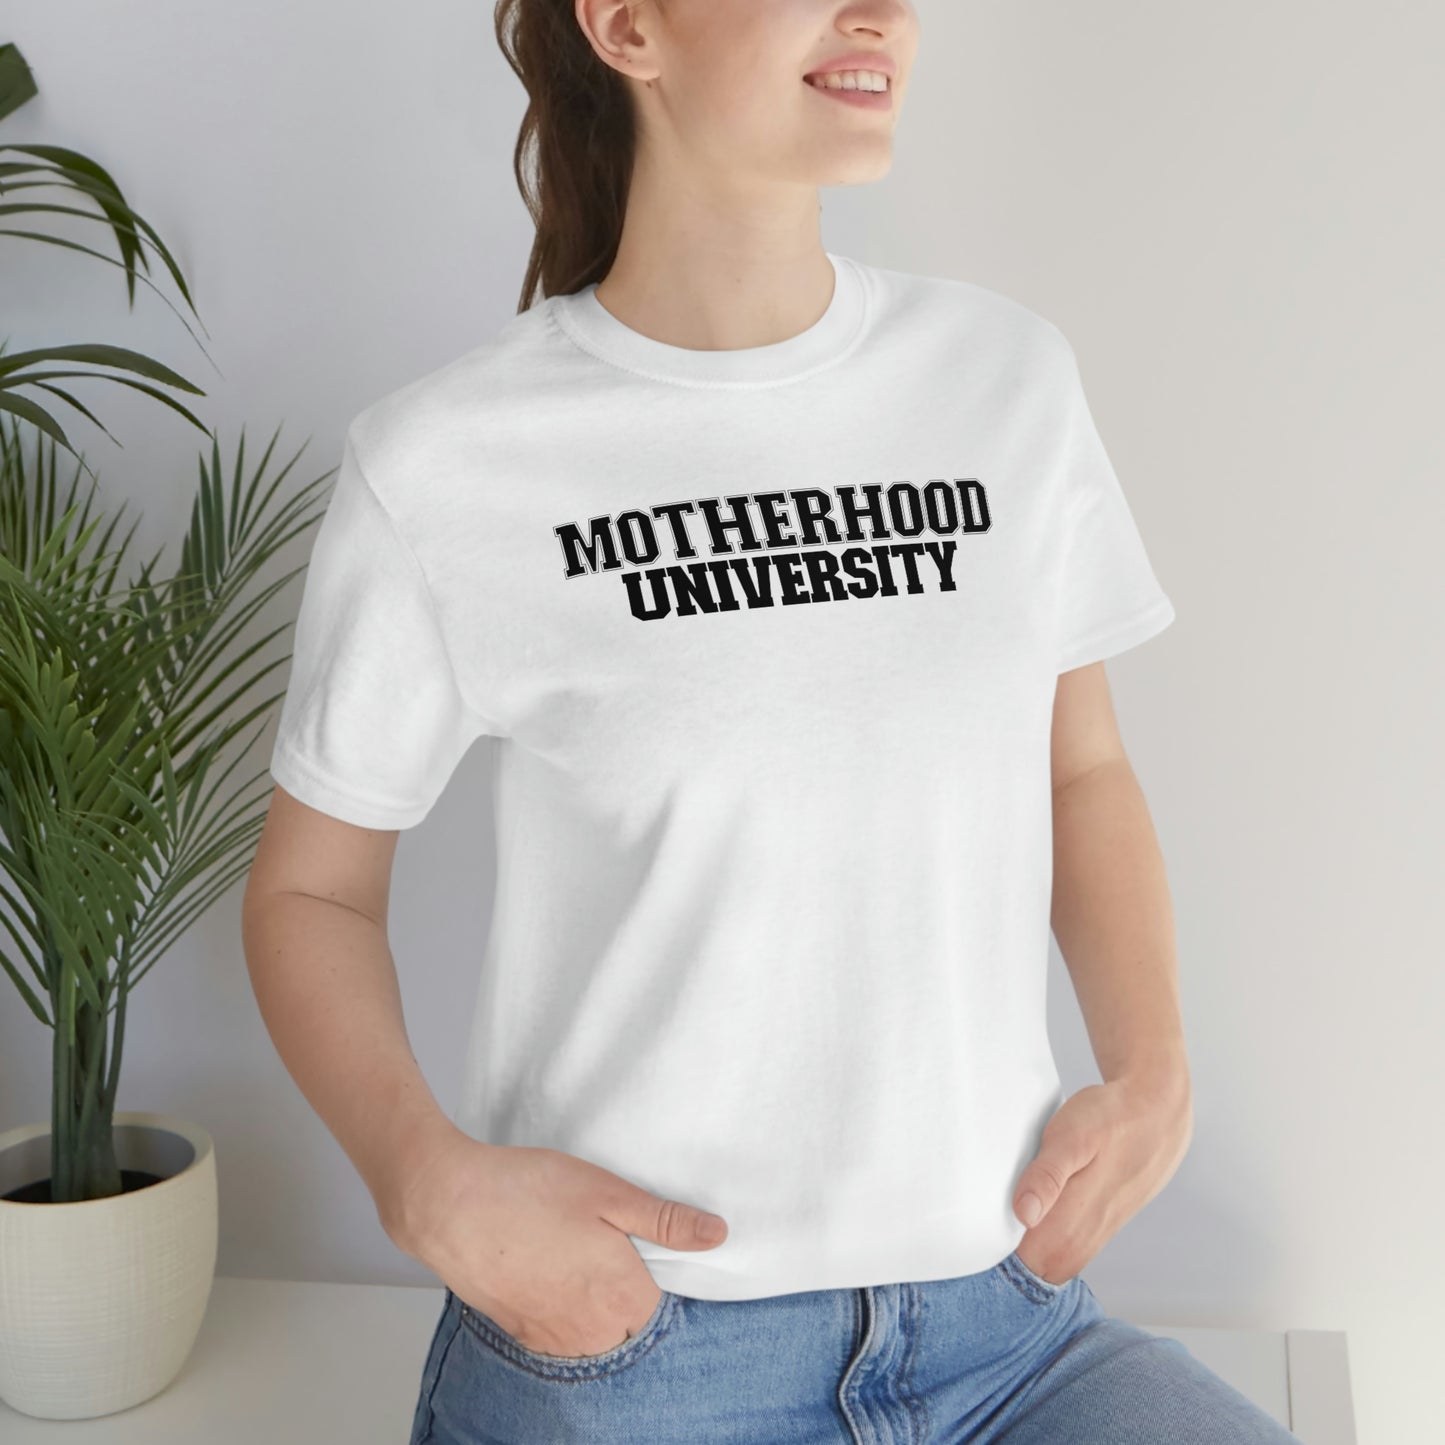 Motherhood University tee